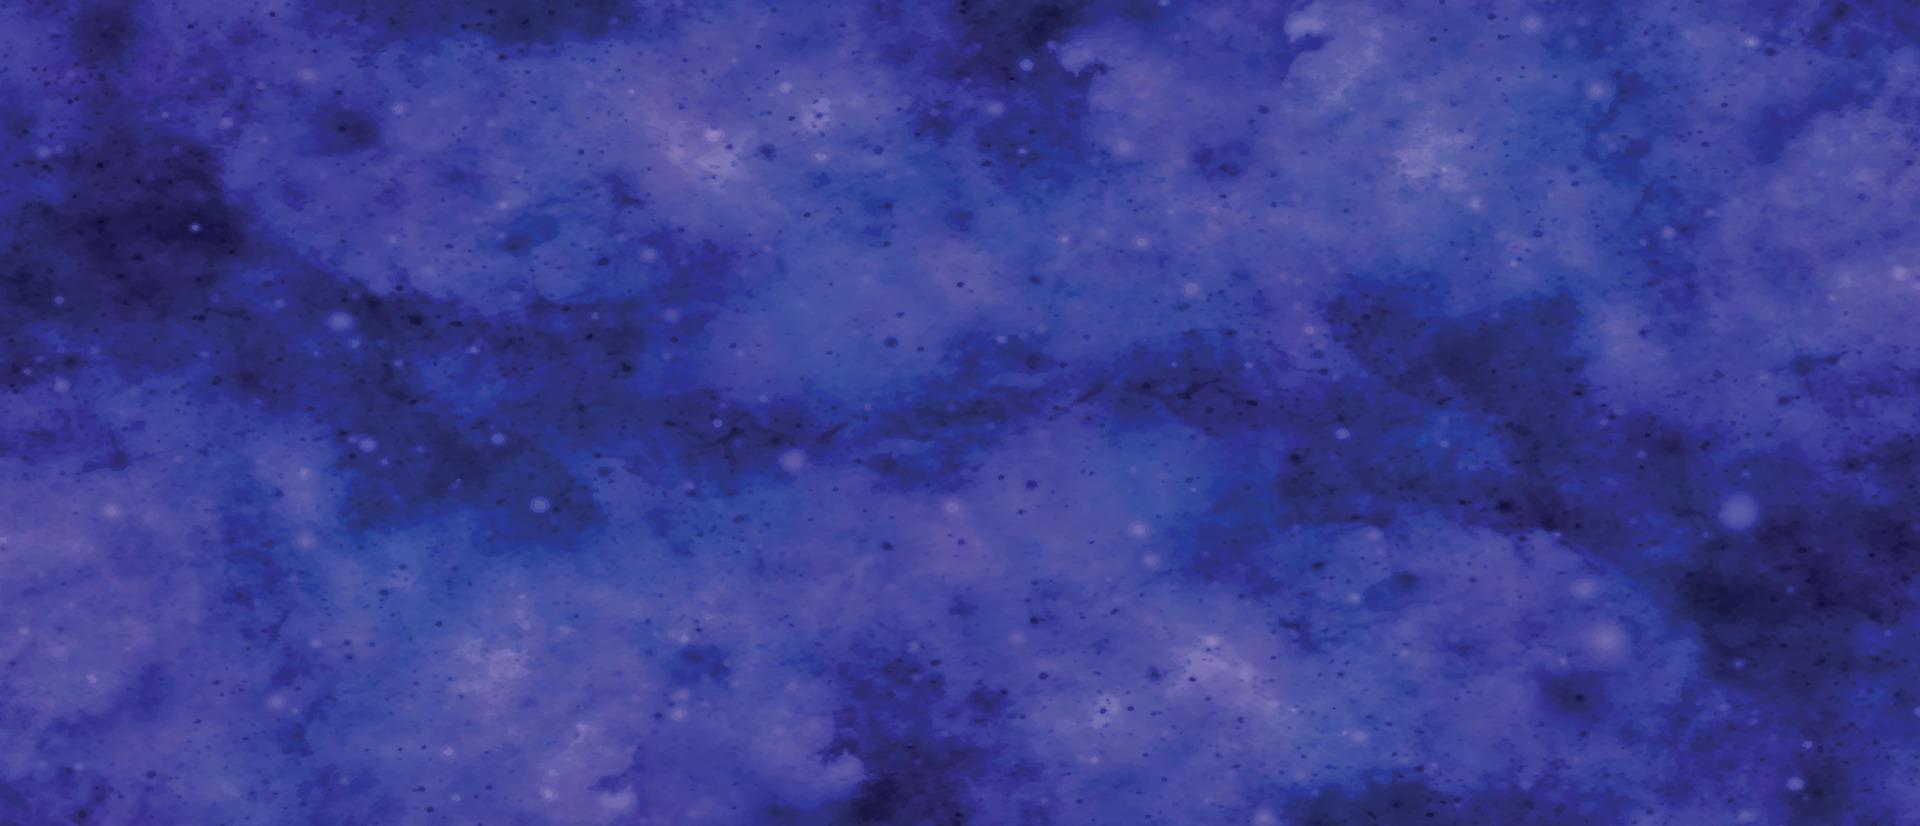 fondo azul oscuro de varias capas pintado a mano artística. nebulosa azul oscuro chispa universo estrella púrpura en el espacio ultraterrestre galaxia horizontal en el espacio. acuarela azul marino y textura de papel. lavar agua vector